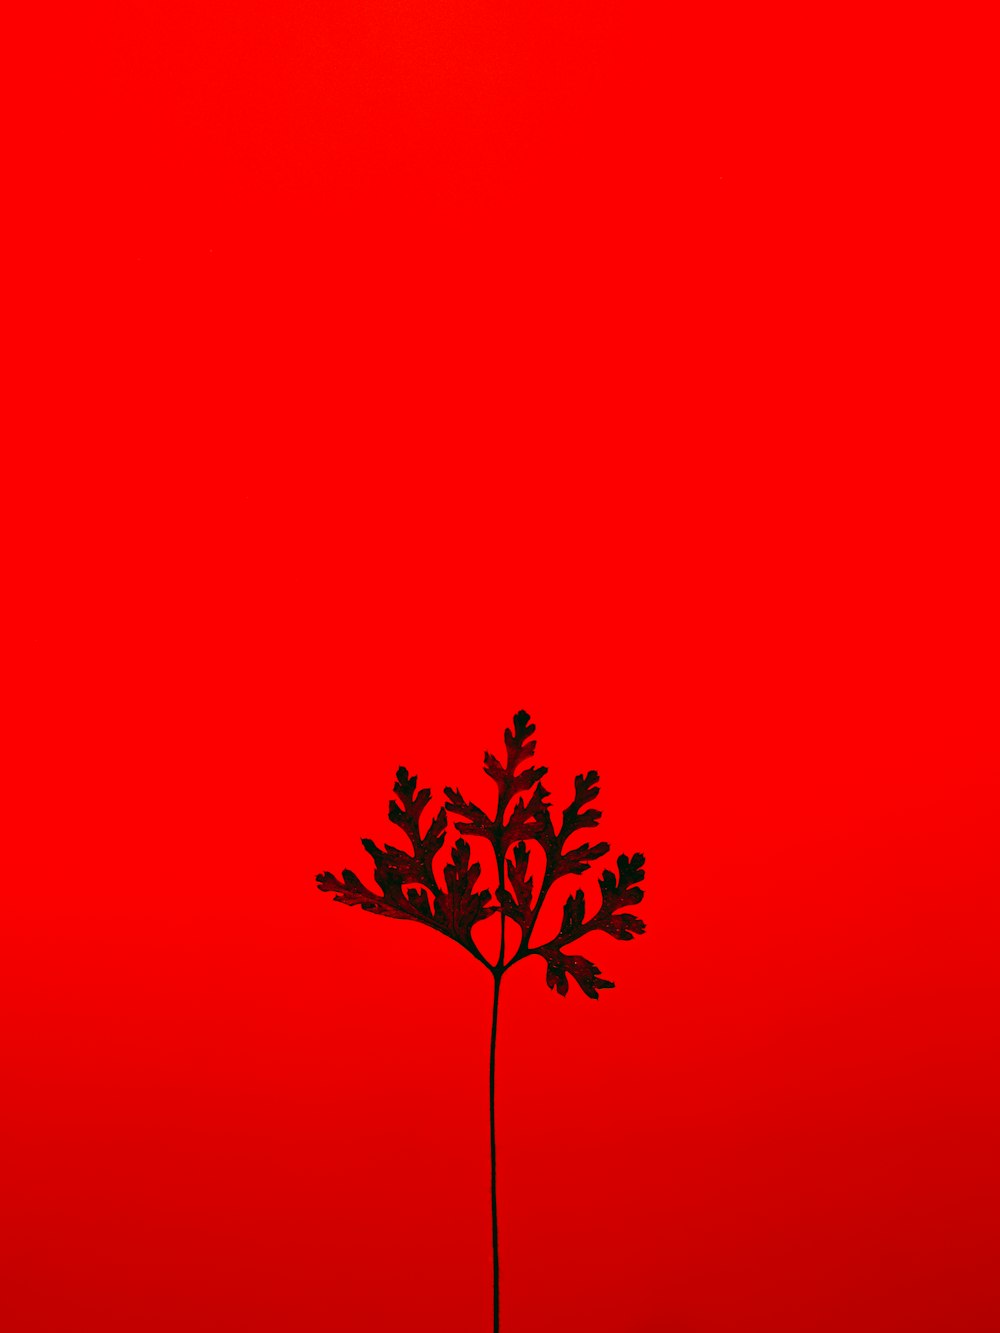 albero rosso e nero con sfondo rosso